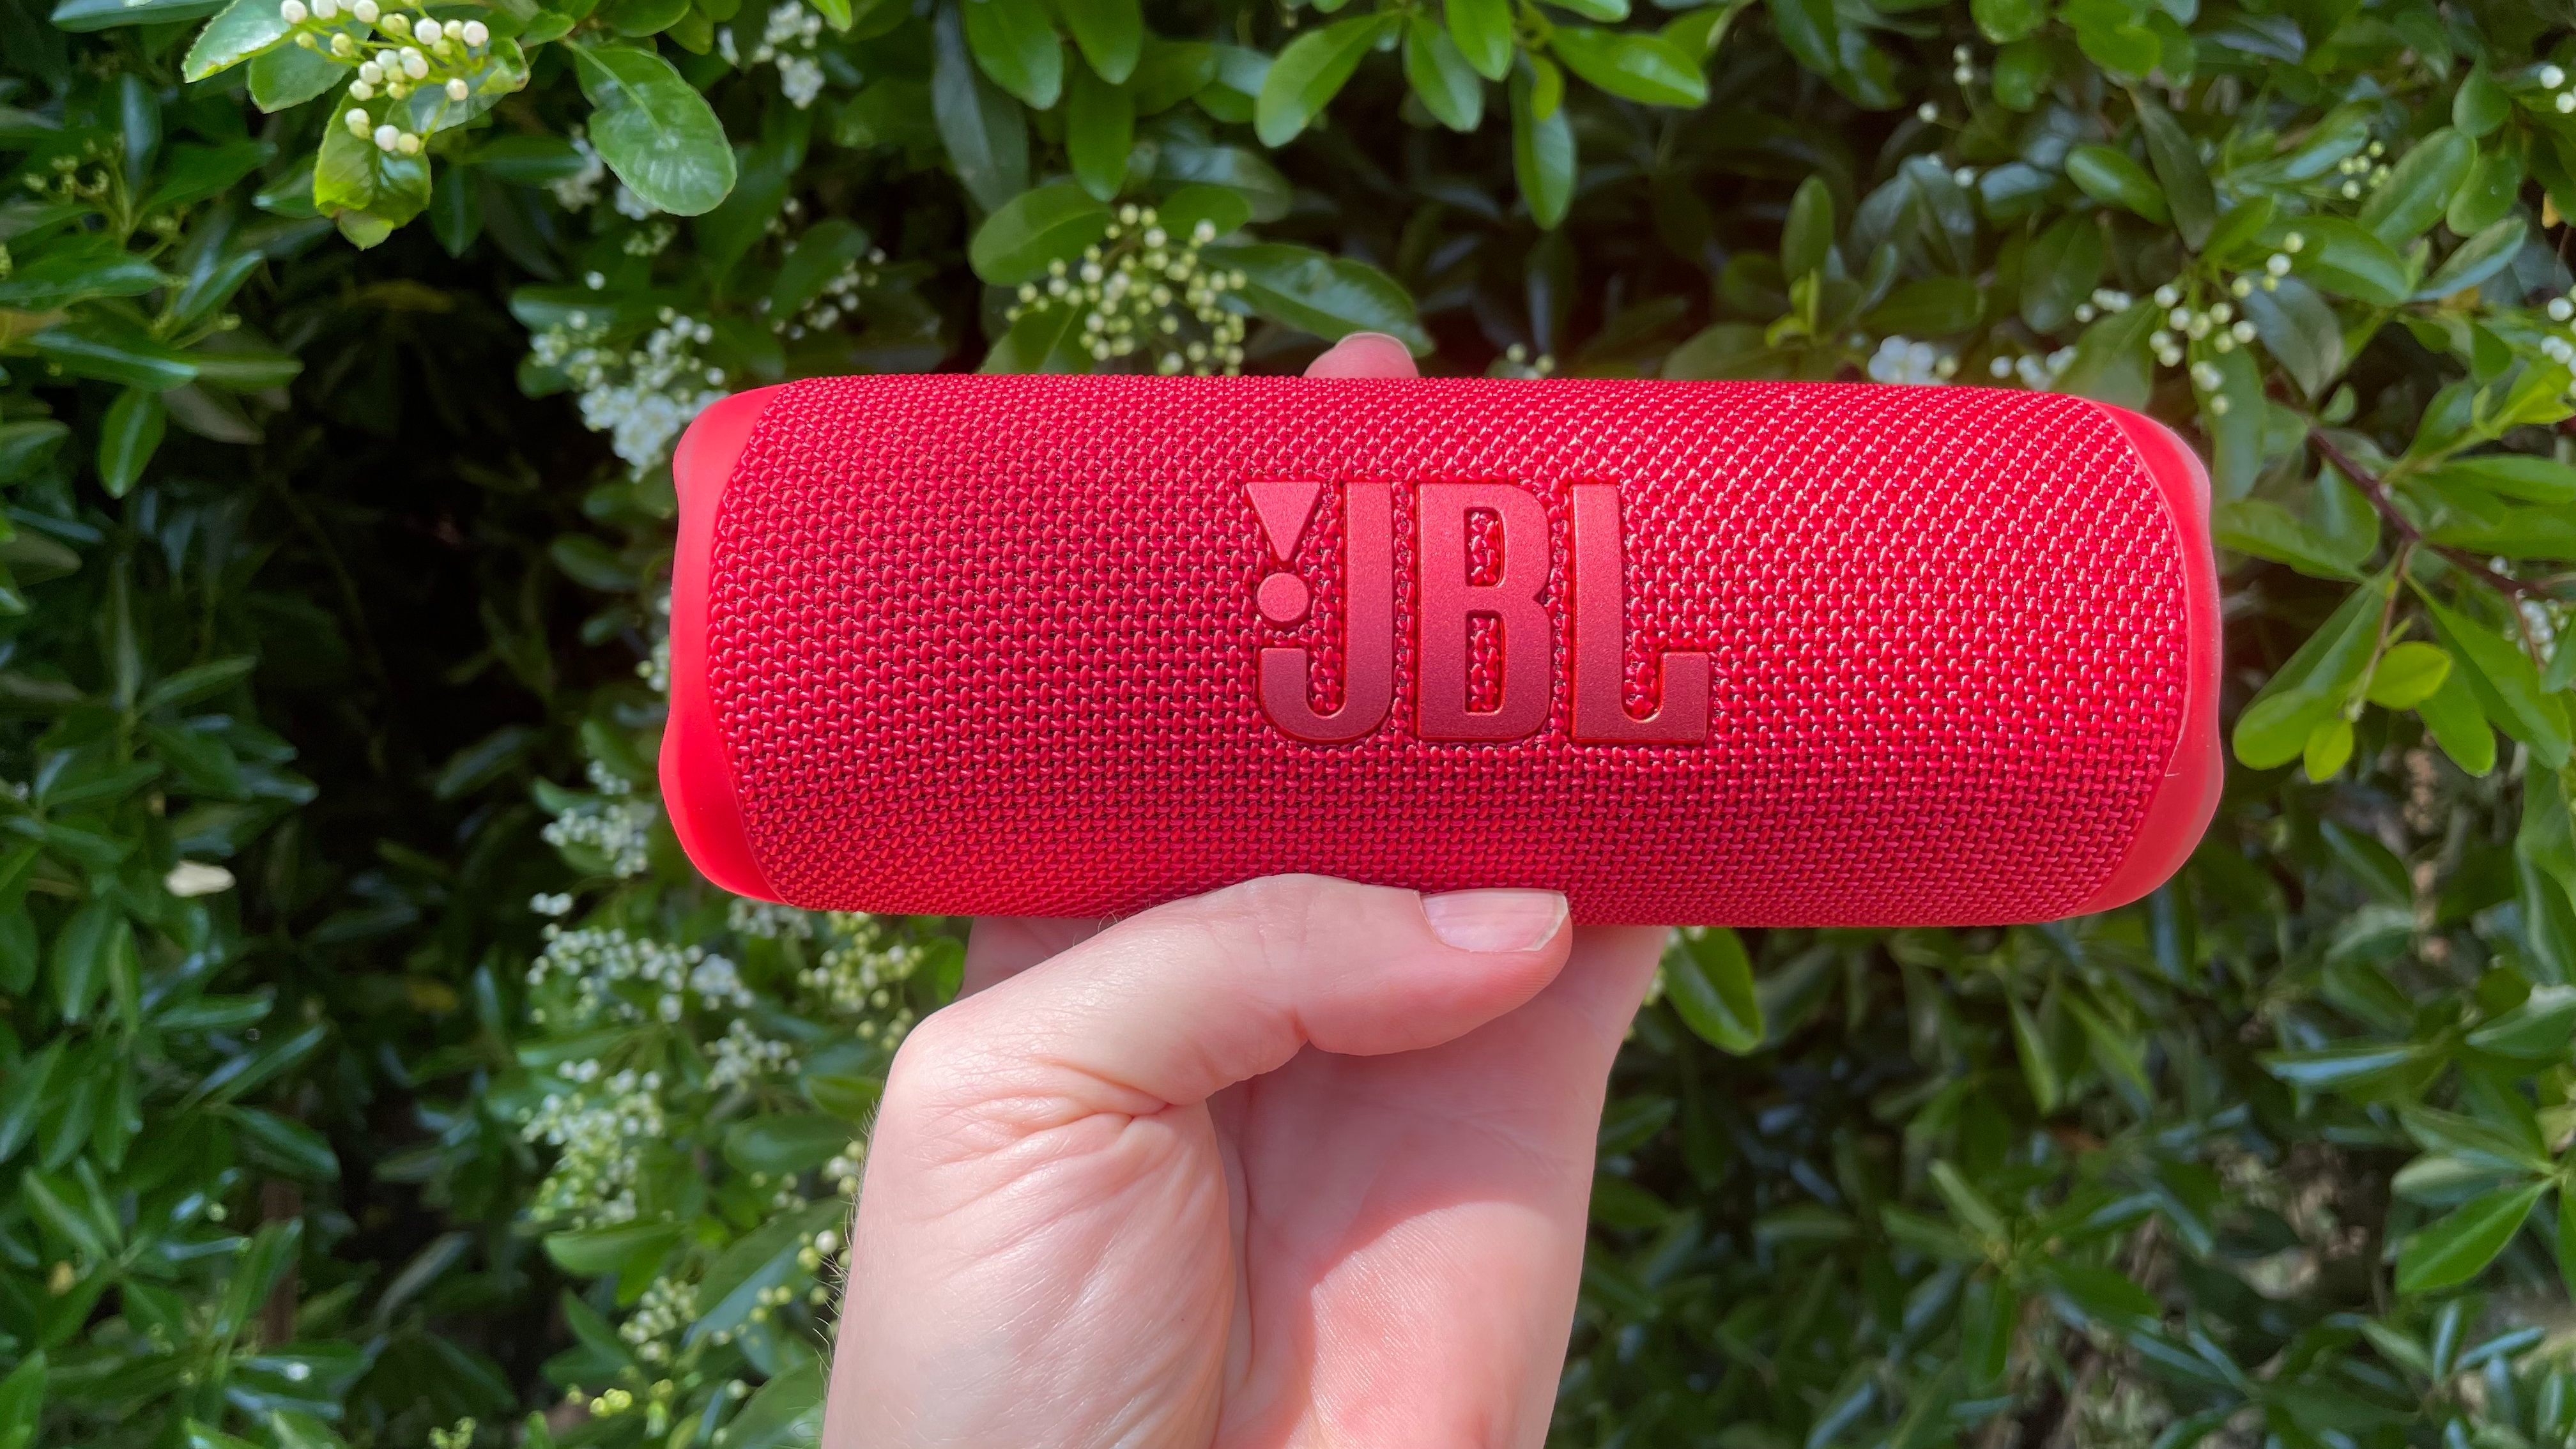 JBL Charge 4 vs JBL Xtreme 3 Side-by-Side Speaker Comparison 